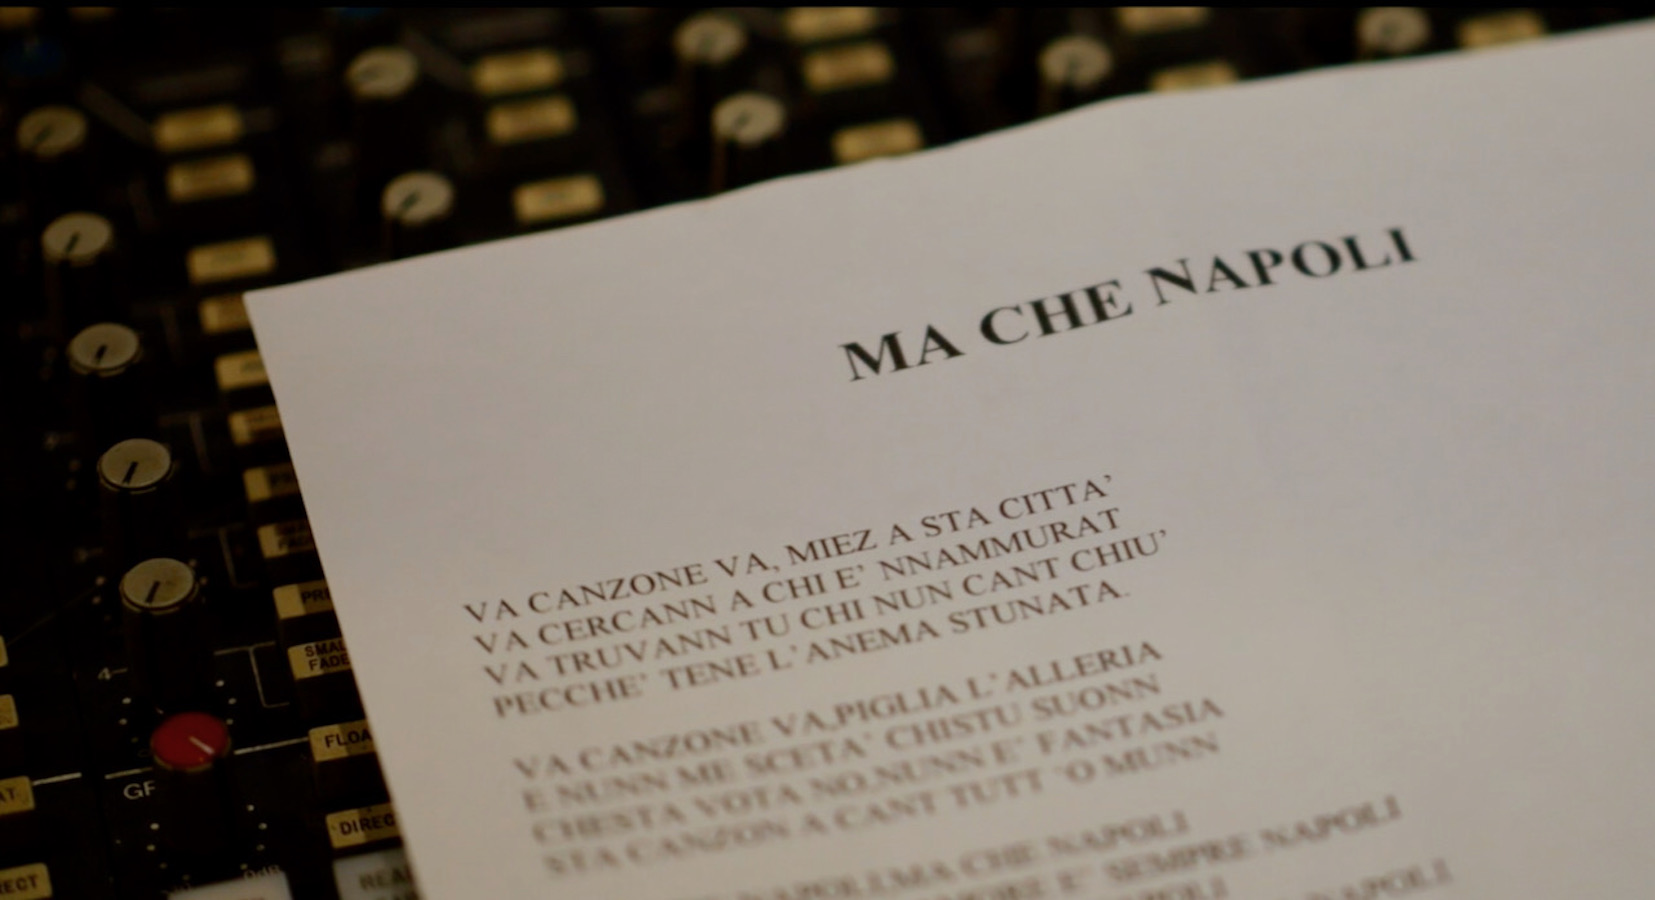 La dedica d’amore musicale alla nostra città e al Napoli “Ma che Napoli” online